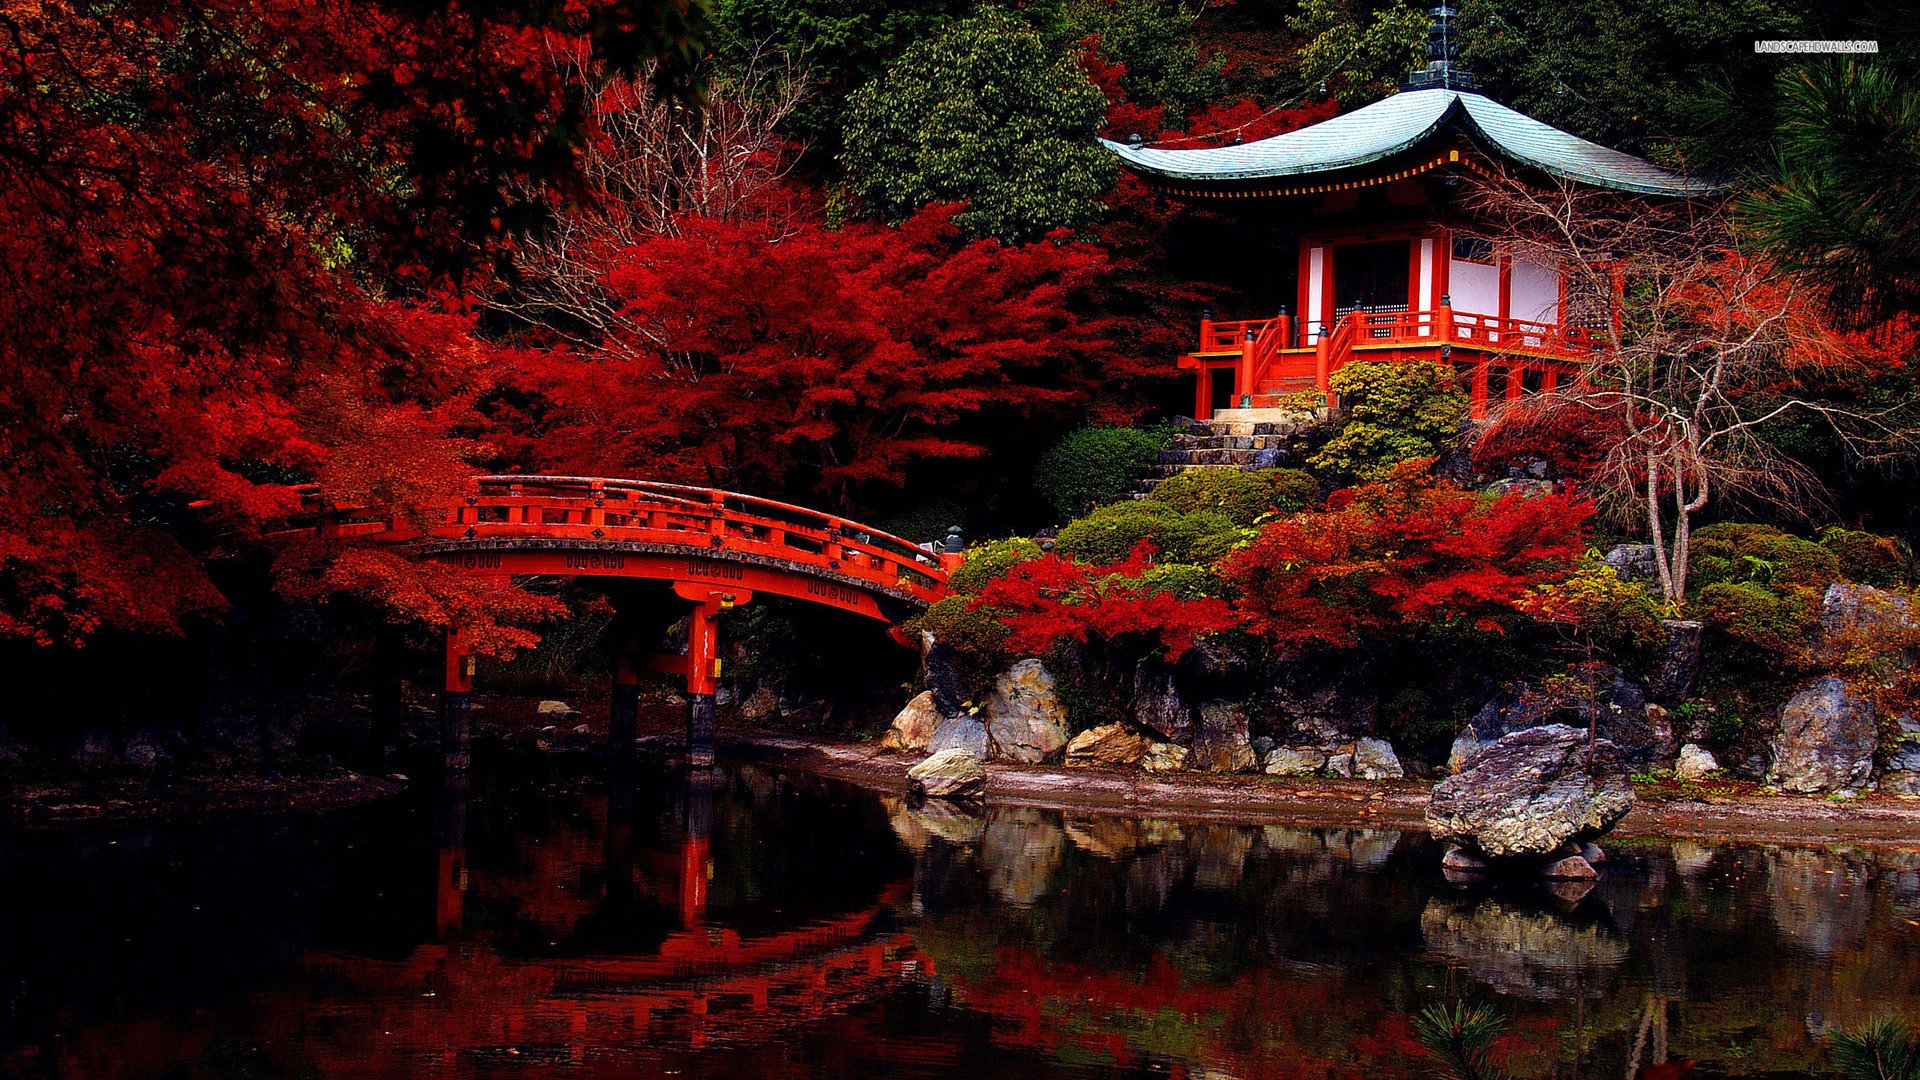 General 1920x1080 temple Japan pavilion red leaves garden bridge plants reflection